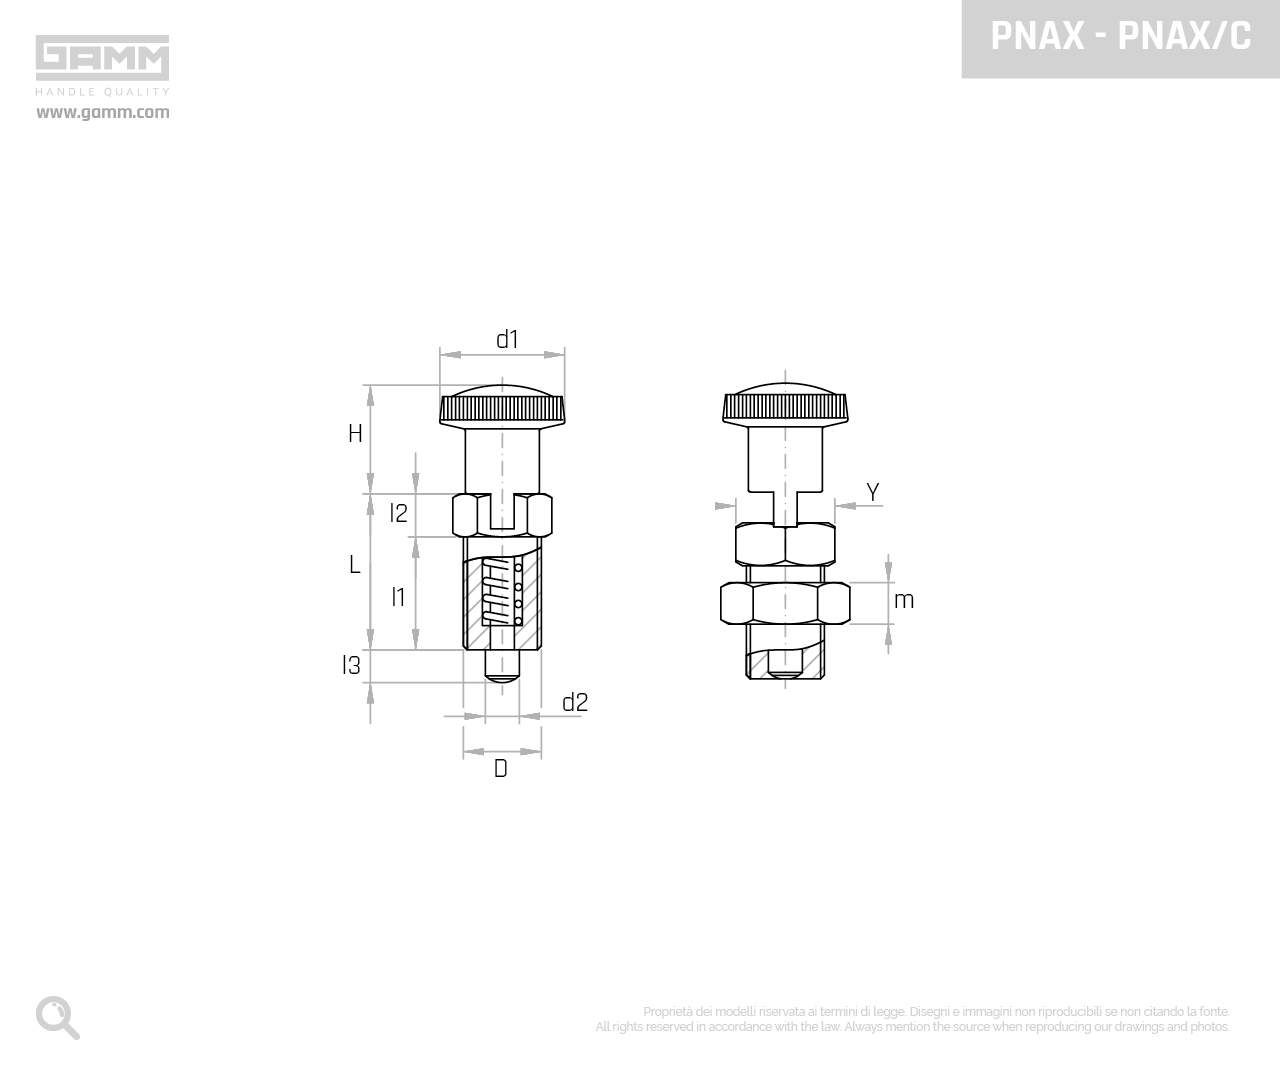 PNAX PNAX C disegno pistoncini e pressori GAMM